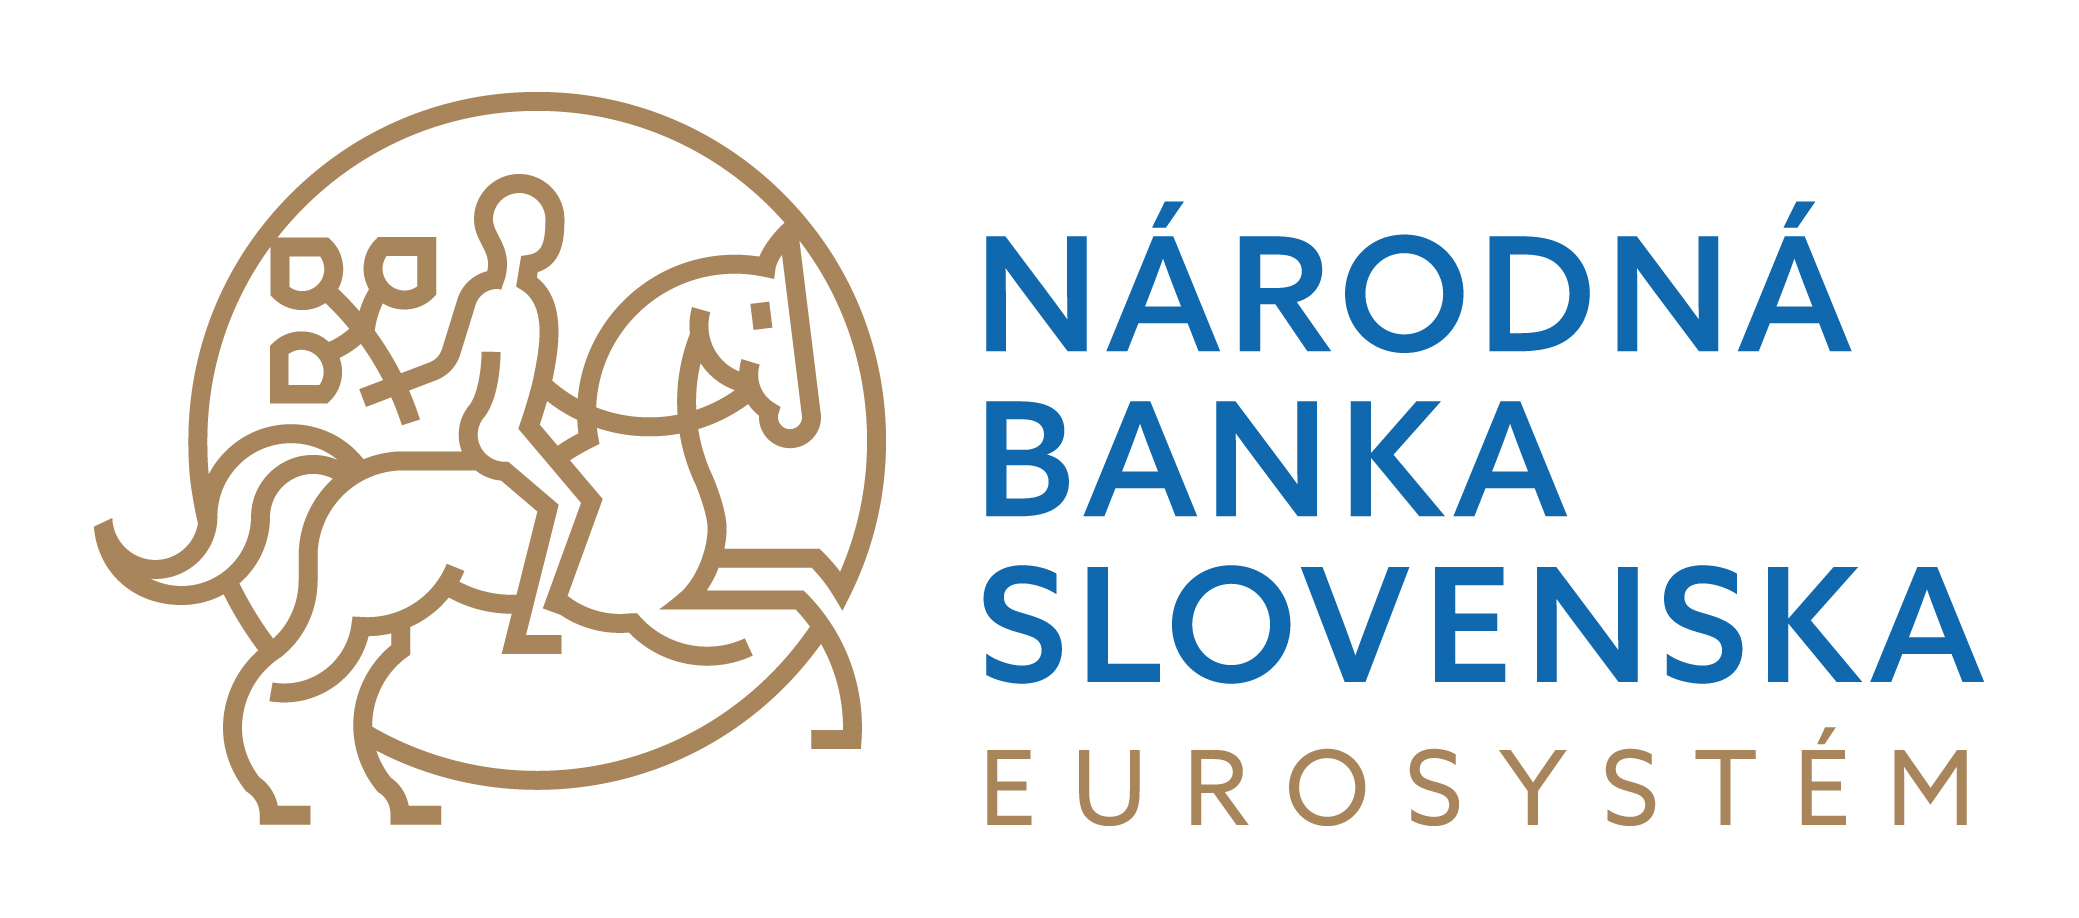 narodnabankaslovenska_logo_2019_rgb